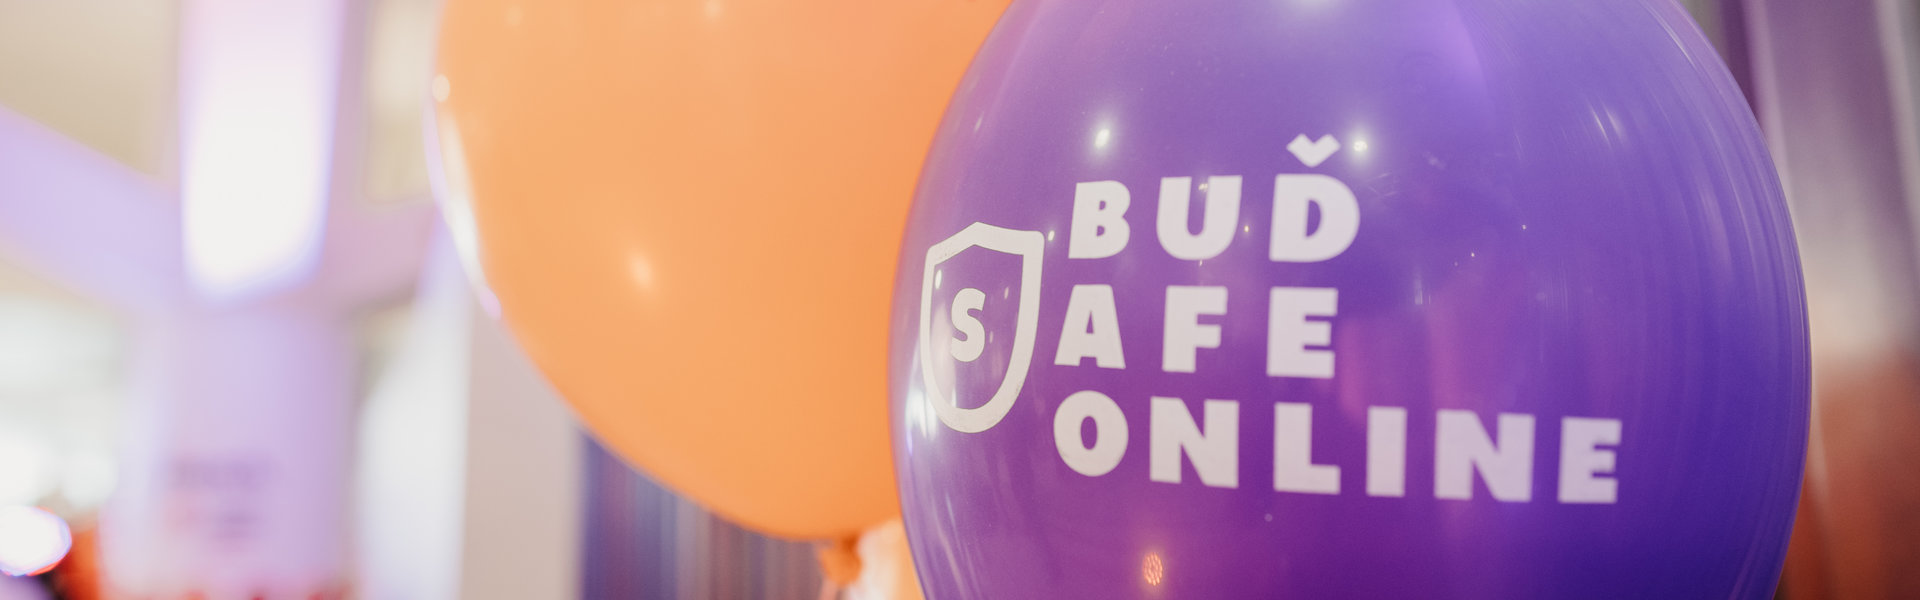 Vzdělávací program Buď safe online slaví 5 let